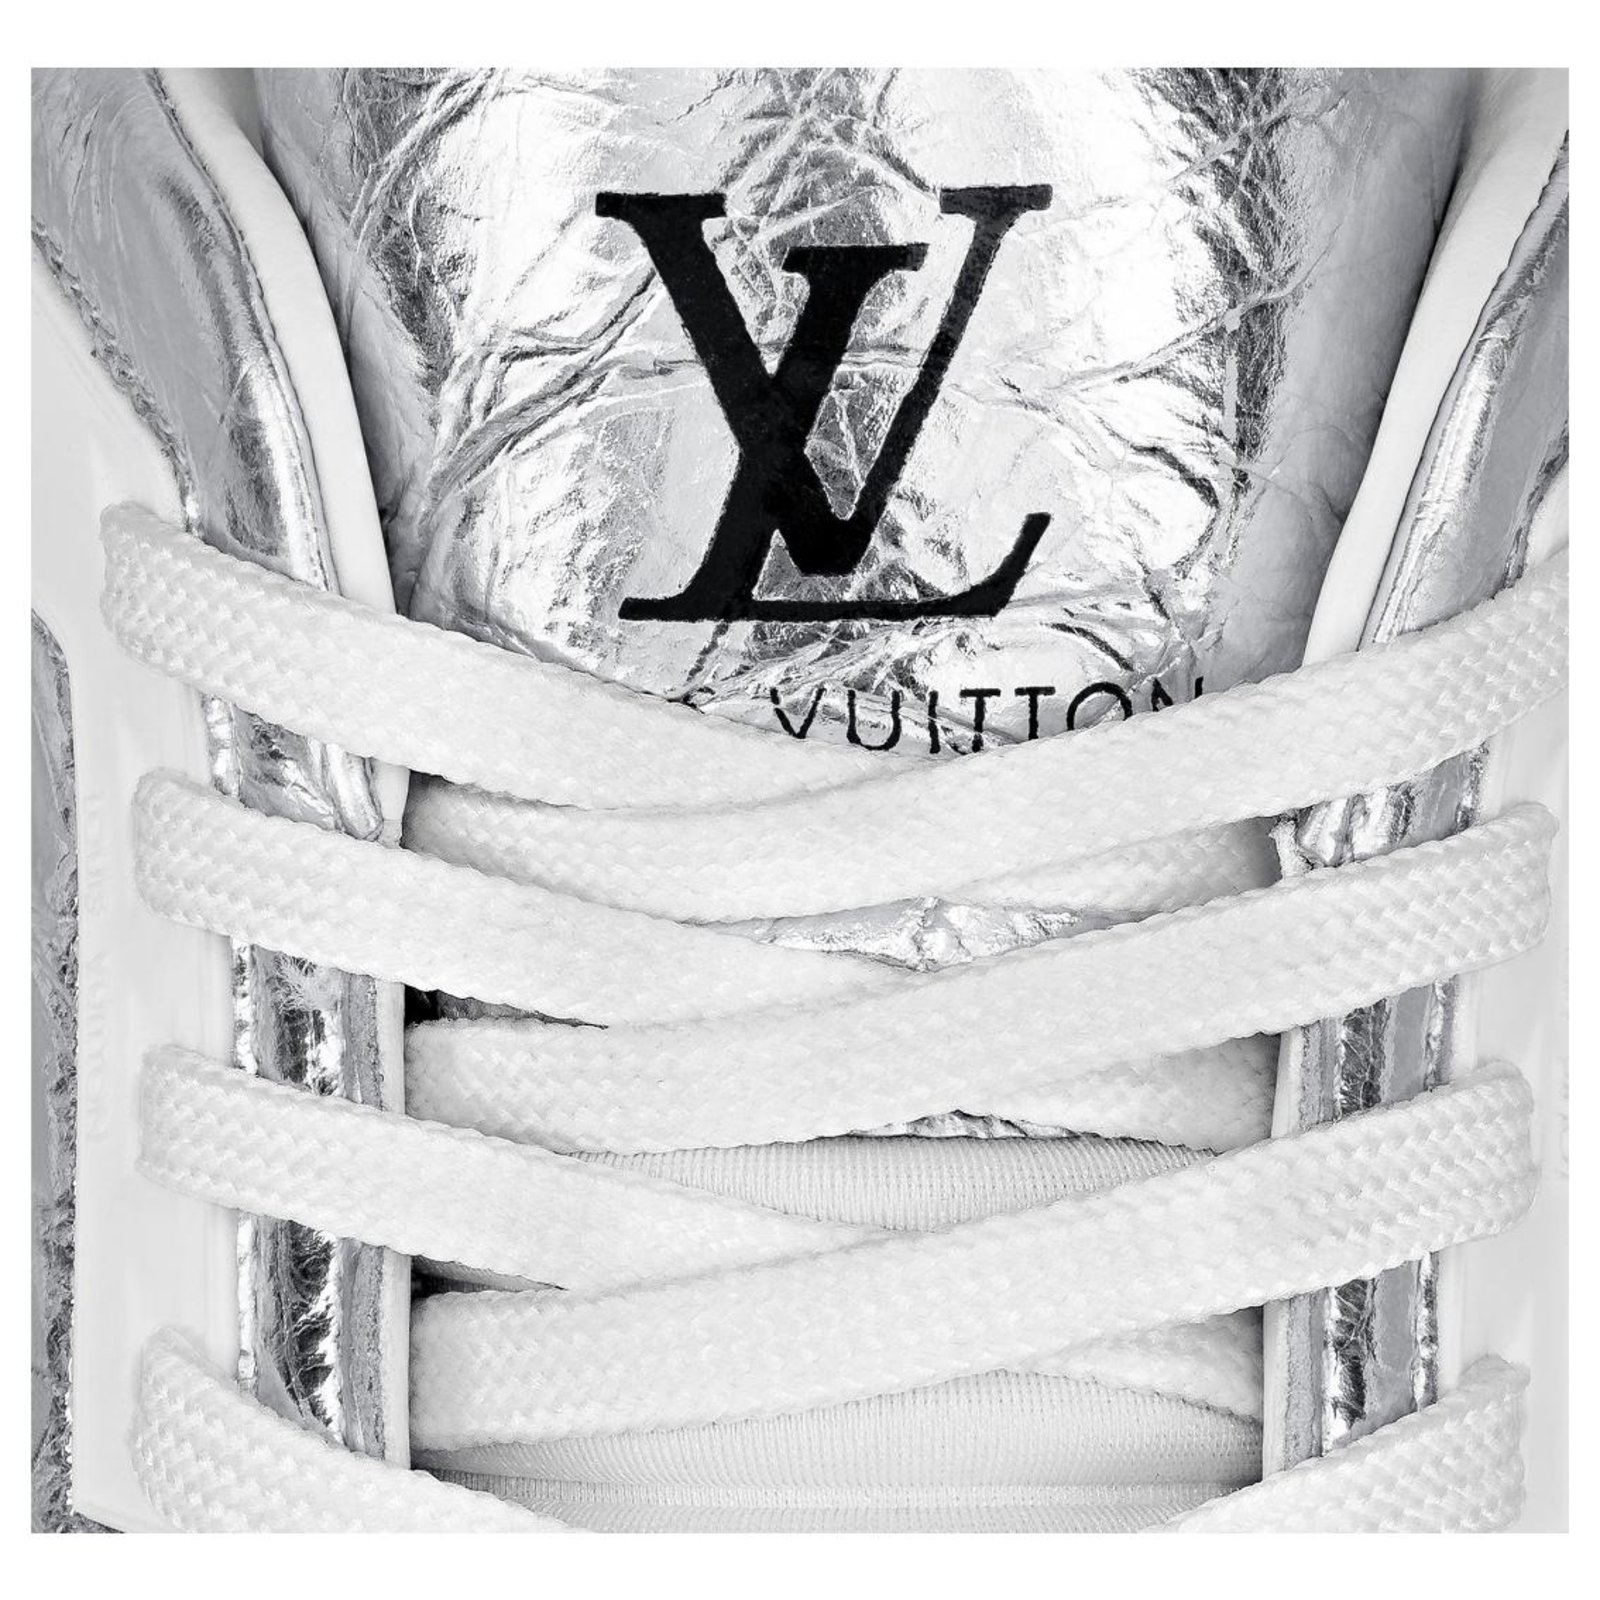 Louis Vuitton Shoes Trainers Size 43 Sliver Mens